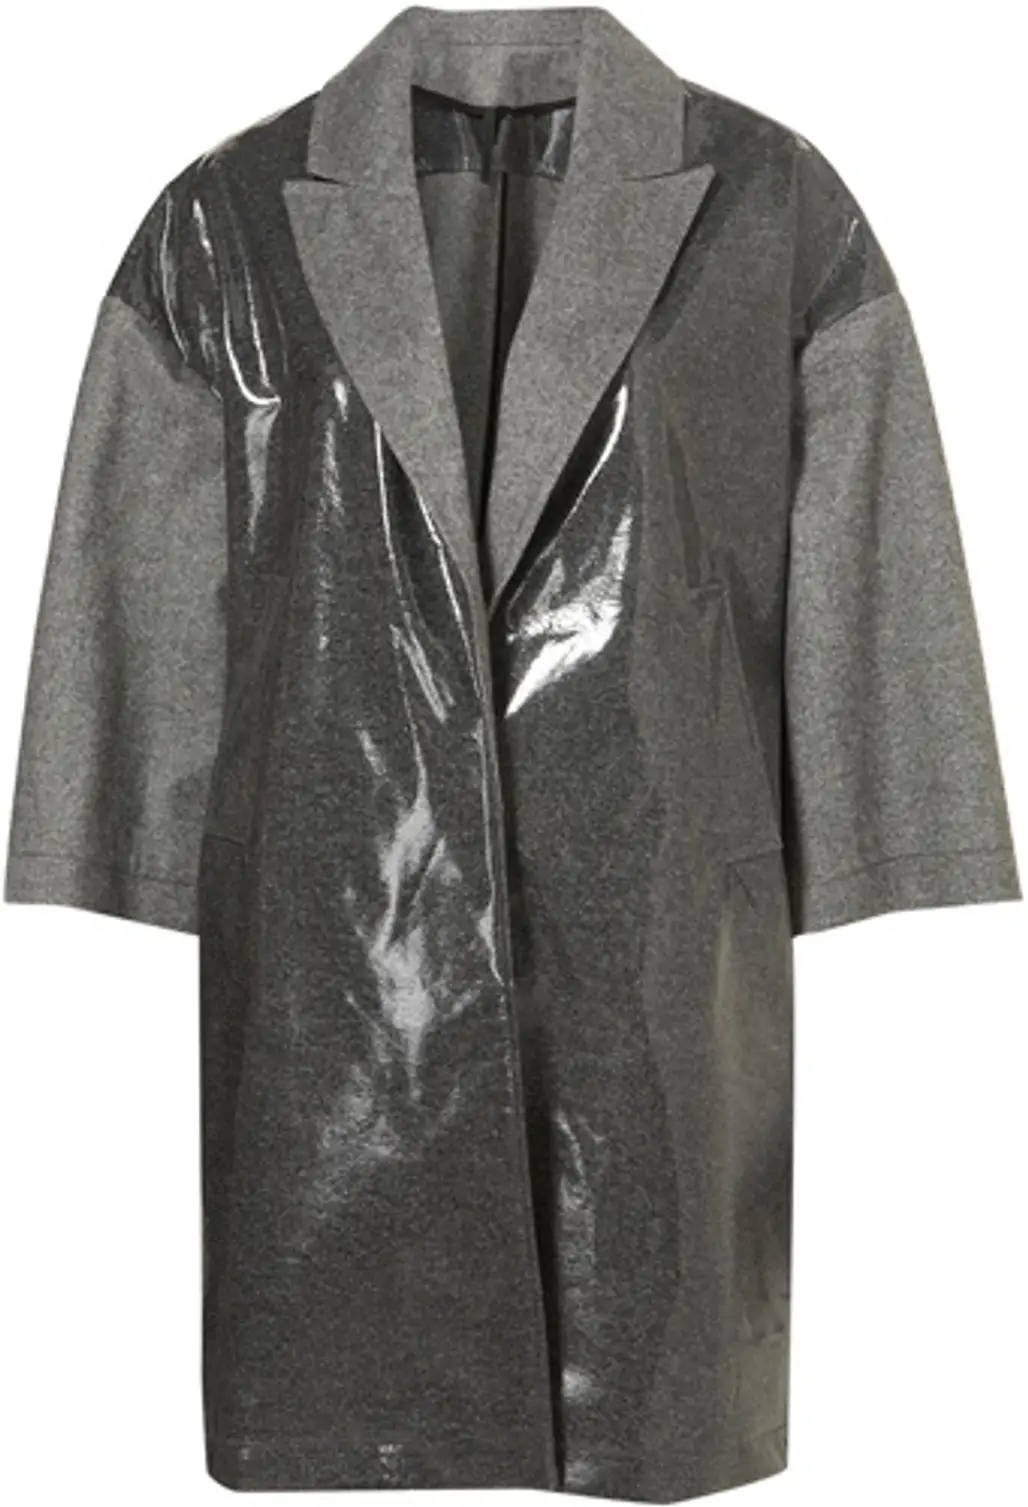 Topshop Unique Grey Coated Raincoat